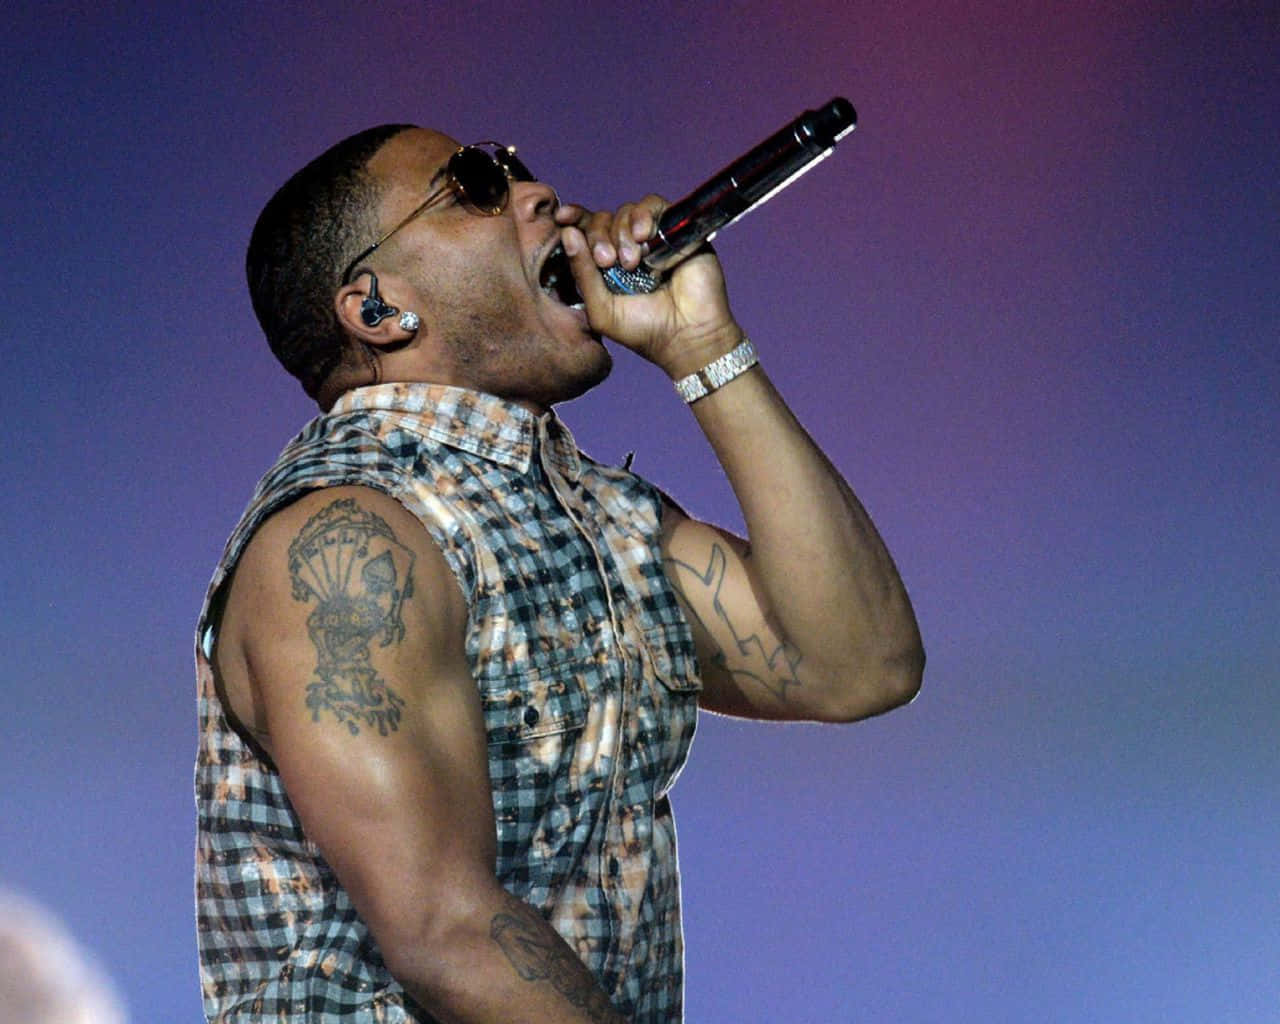 Nellyhält Das Mikrofon Und Singt Während Des Konzerts. Wallpaper